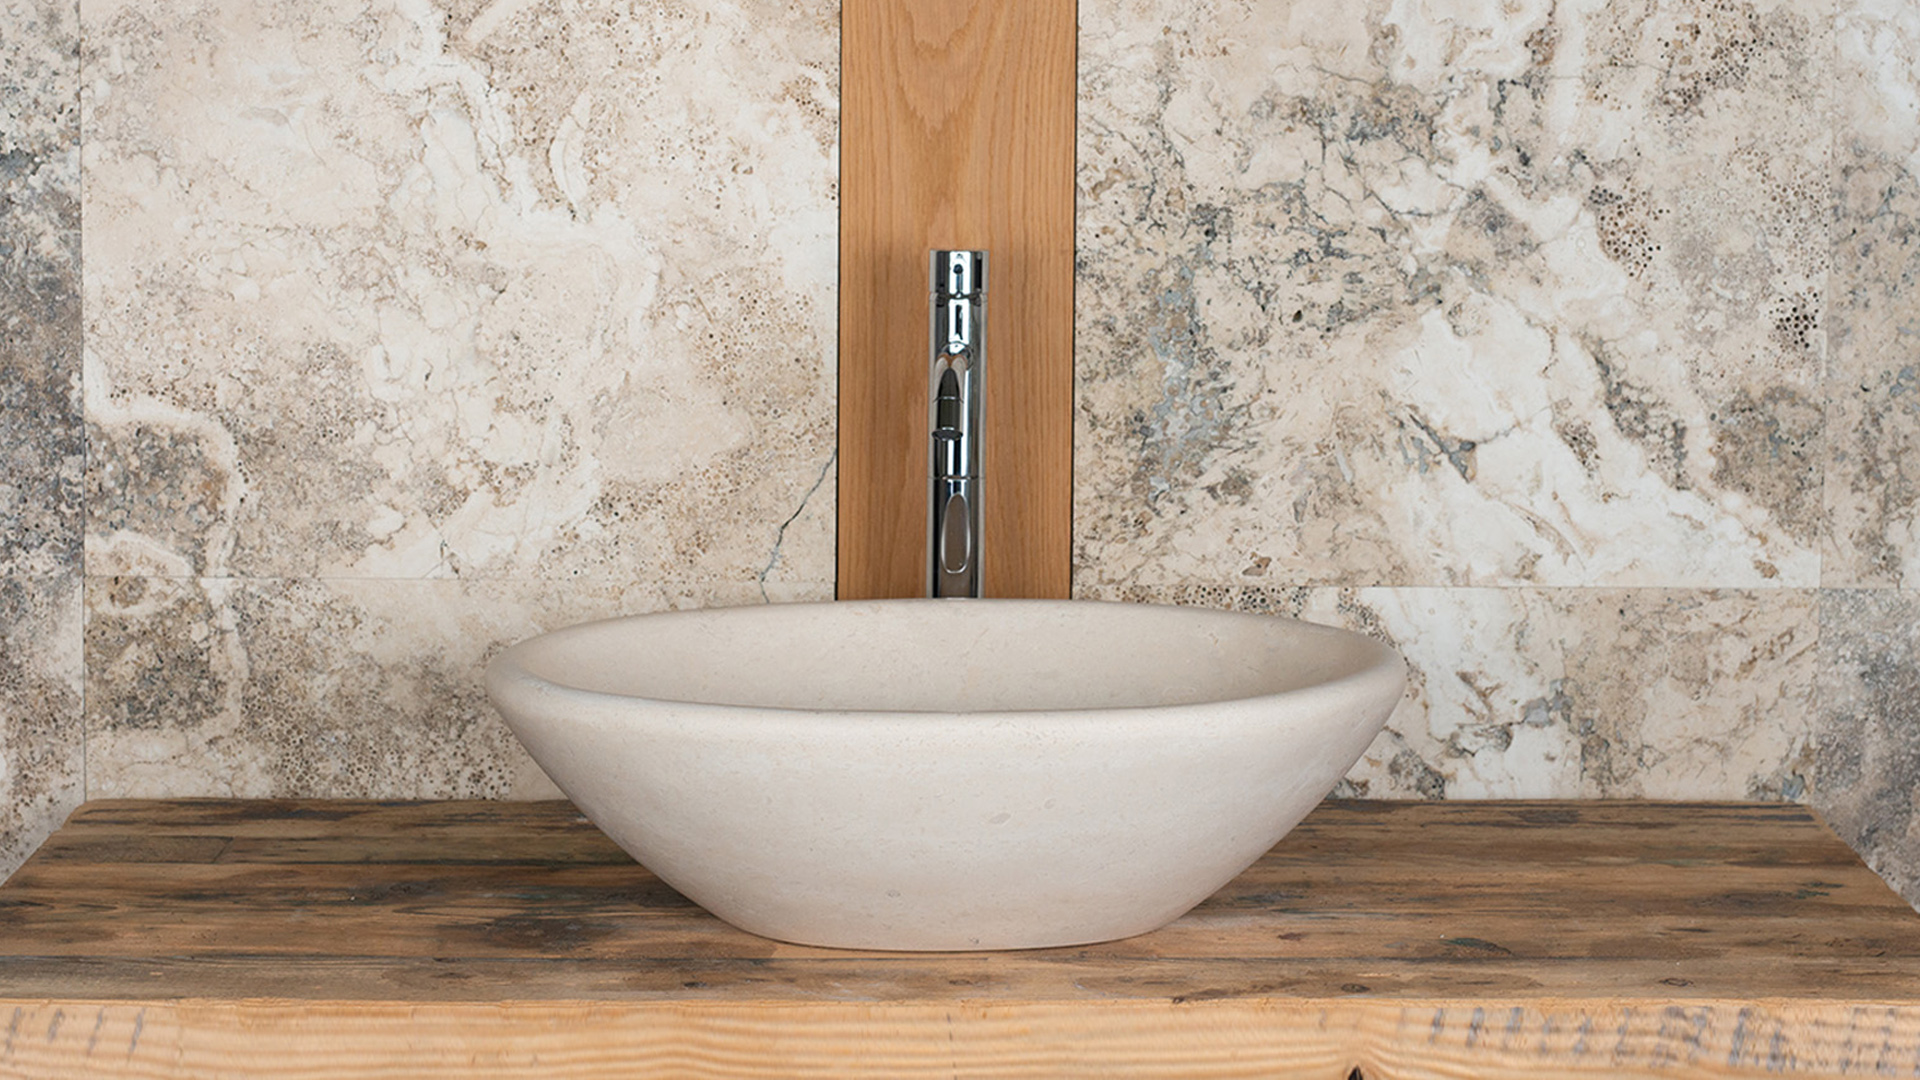 Oval travertine washbasin “Vaschetta”